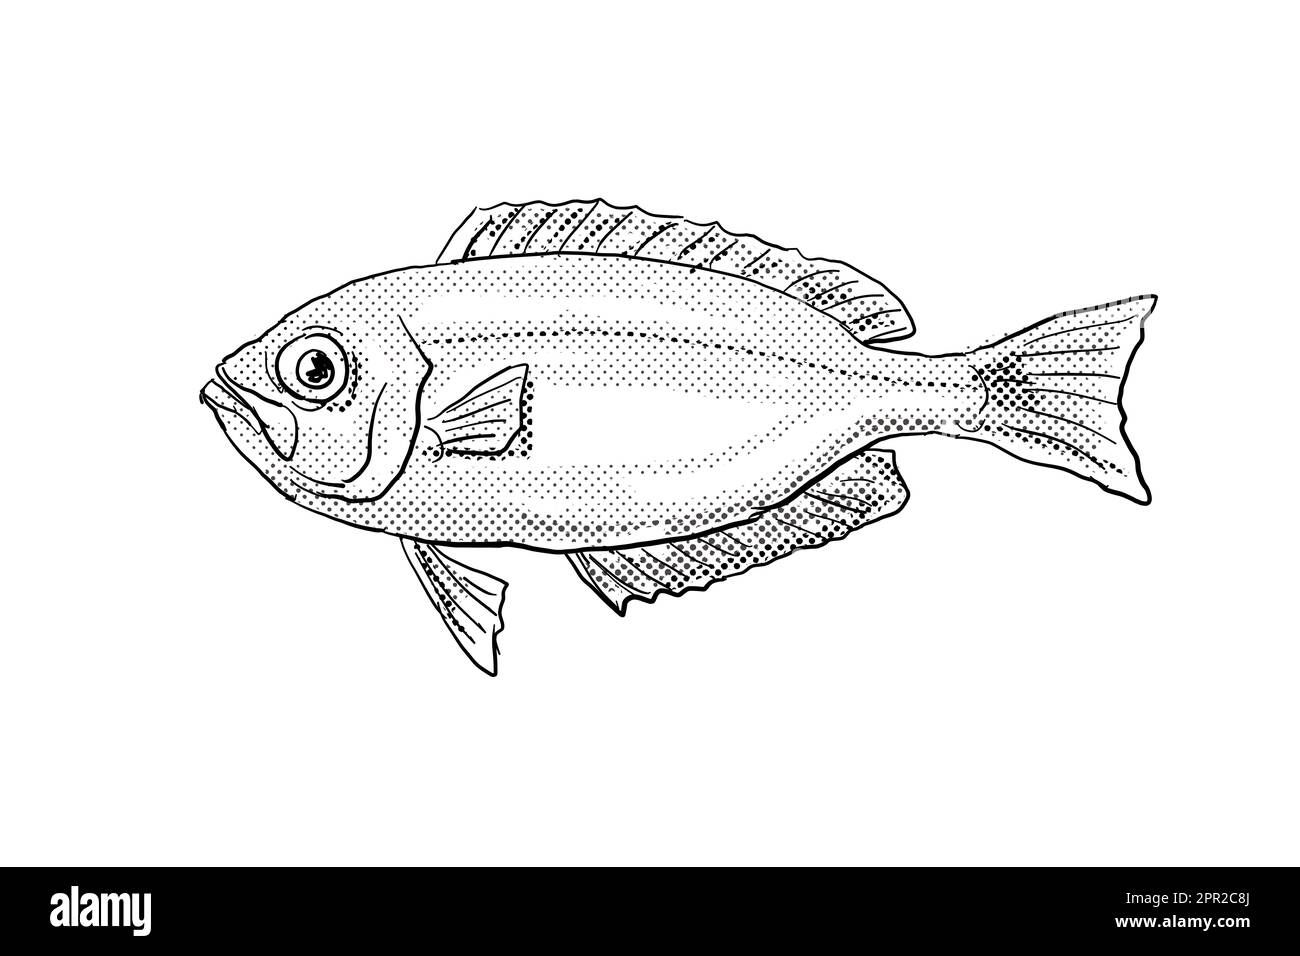 Zeichentrickzeichnung eines hawaiianischen Großaugenblicks Priacanthus meeki oder ula lau, ein Fisch, der auf Hawaii und hawaiianische Inselgruppen endemisch ist, mit Halbtonpunkten Stockfoto